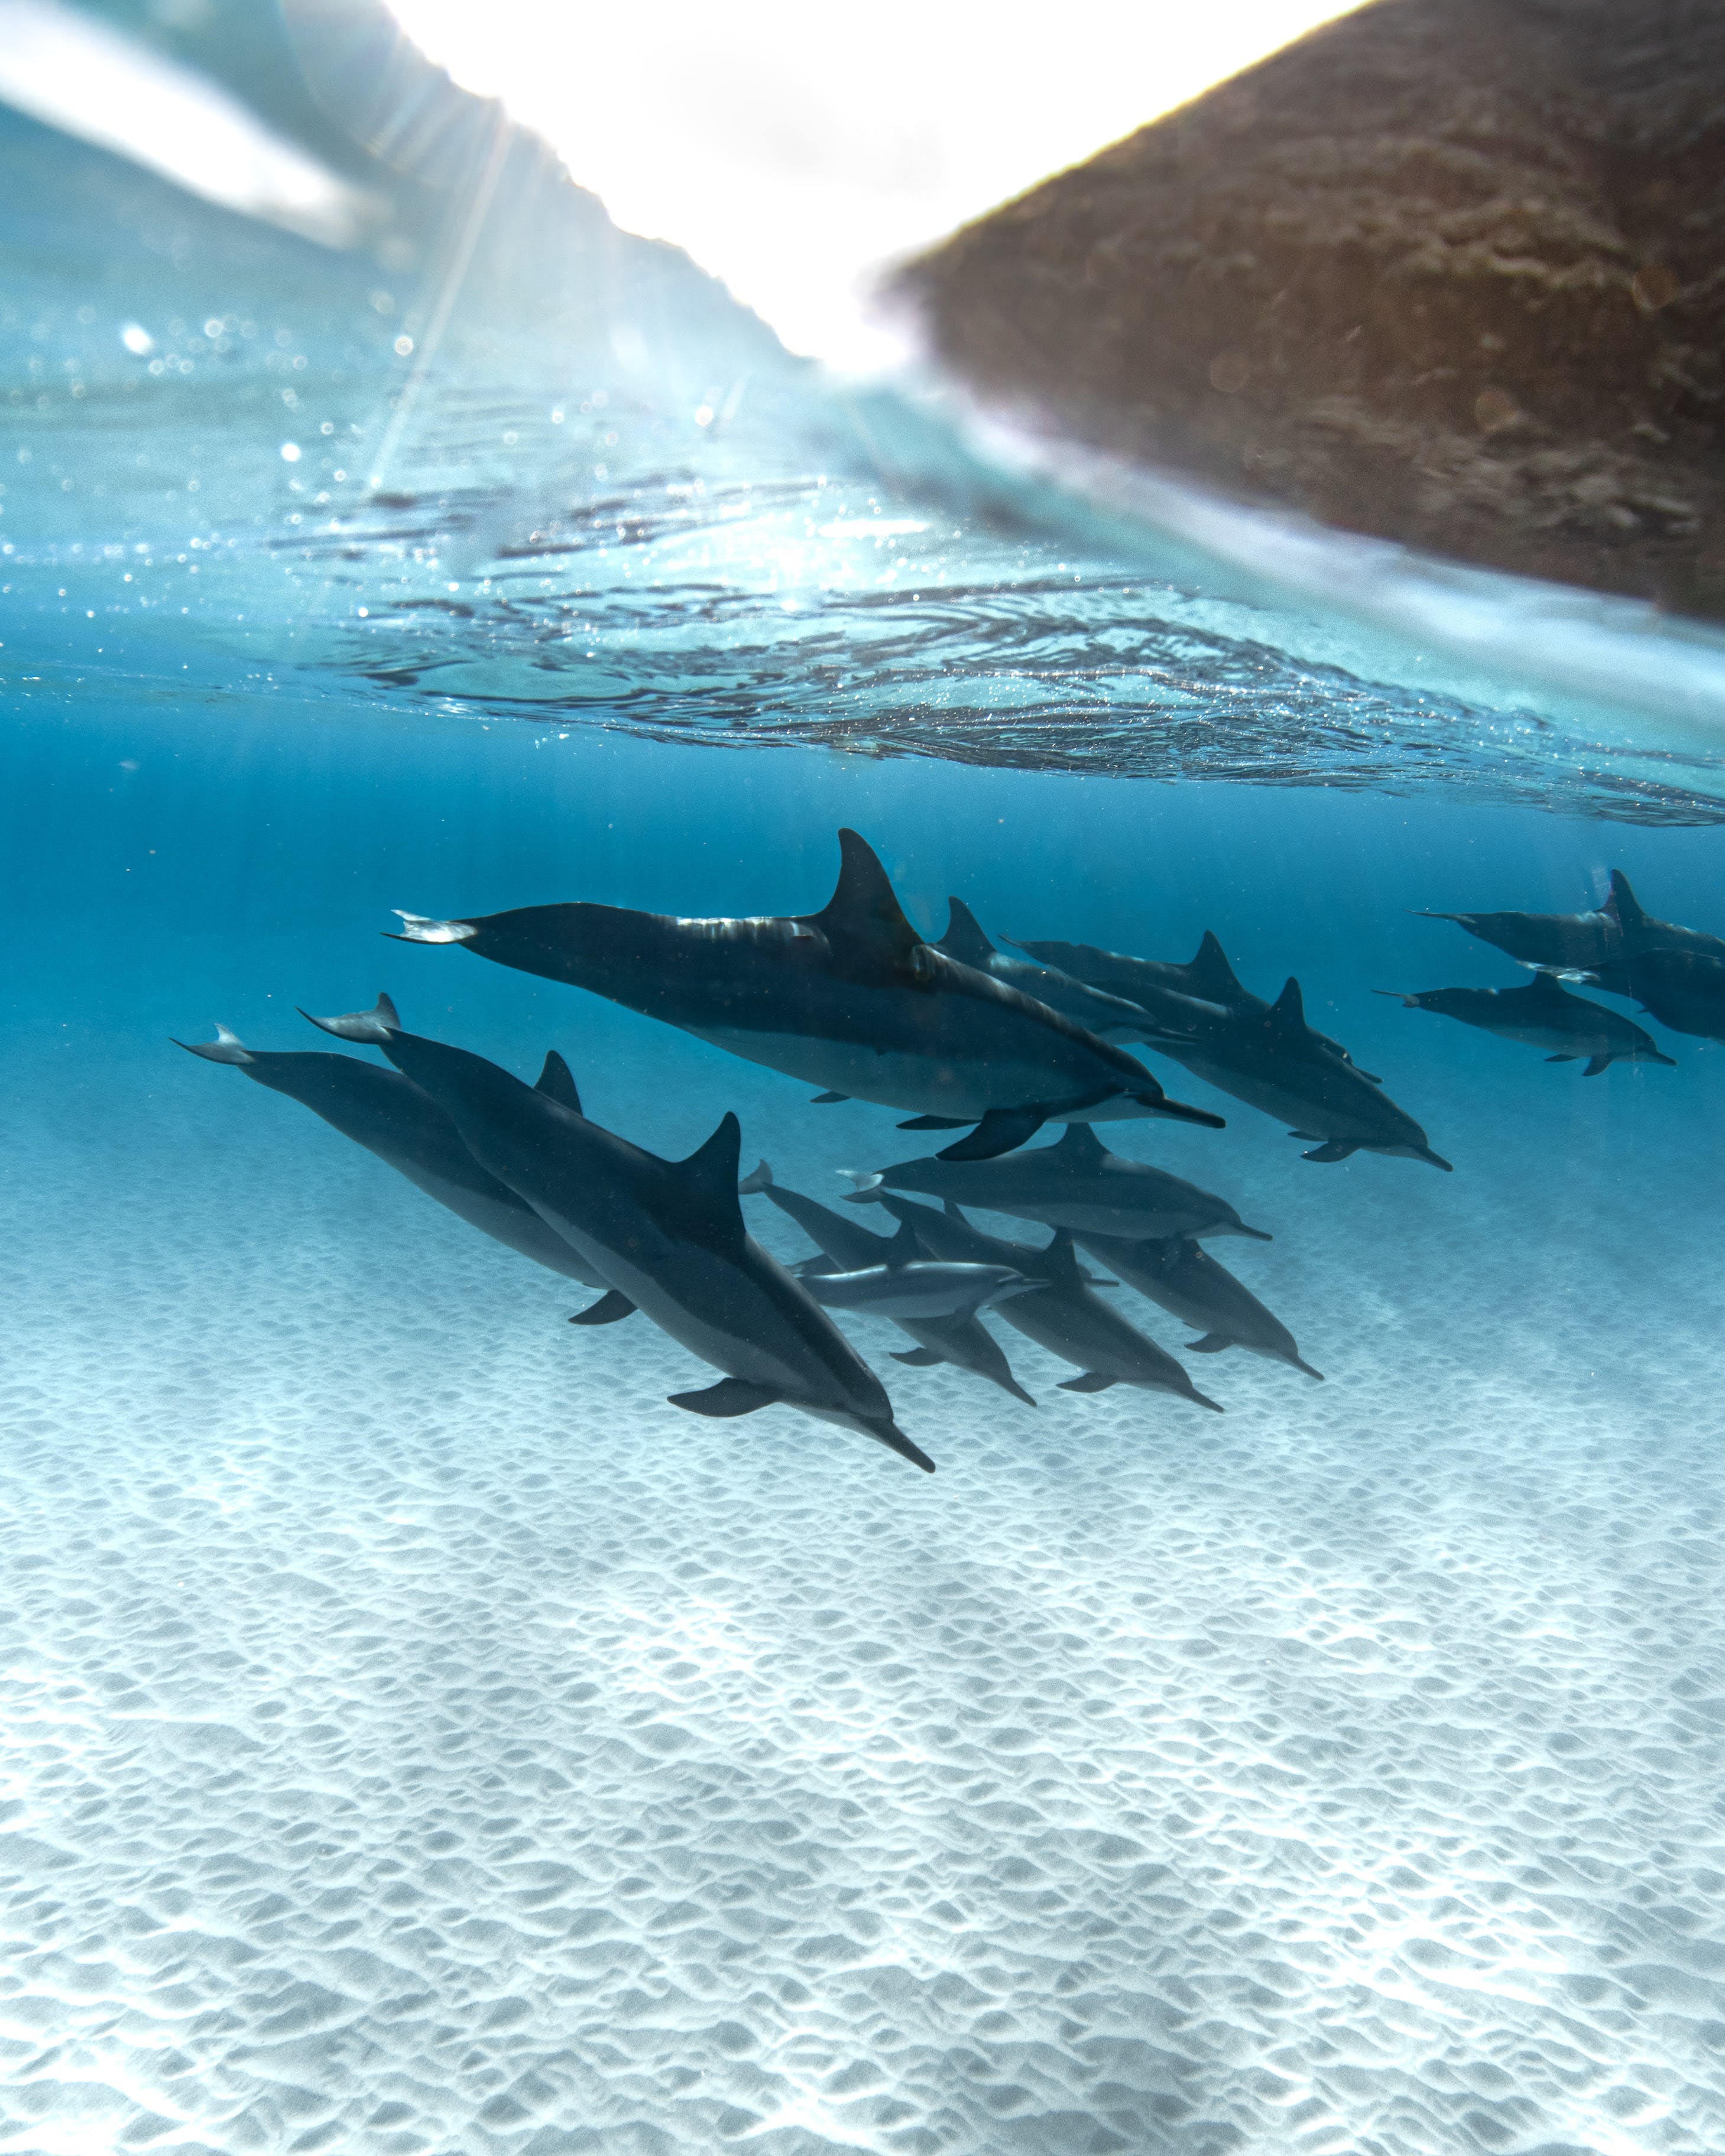  Delfine Hintergrundbild 2918x3648. Kostenloses Foto zum Thema: baden, delfine, fische, natur, ozean, unterwasser, vertikal, wassertier